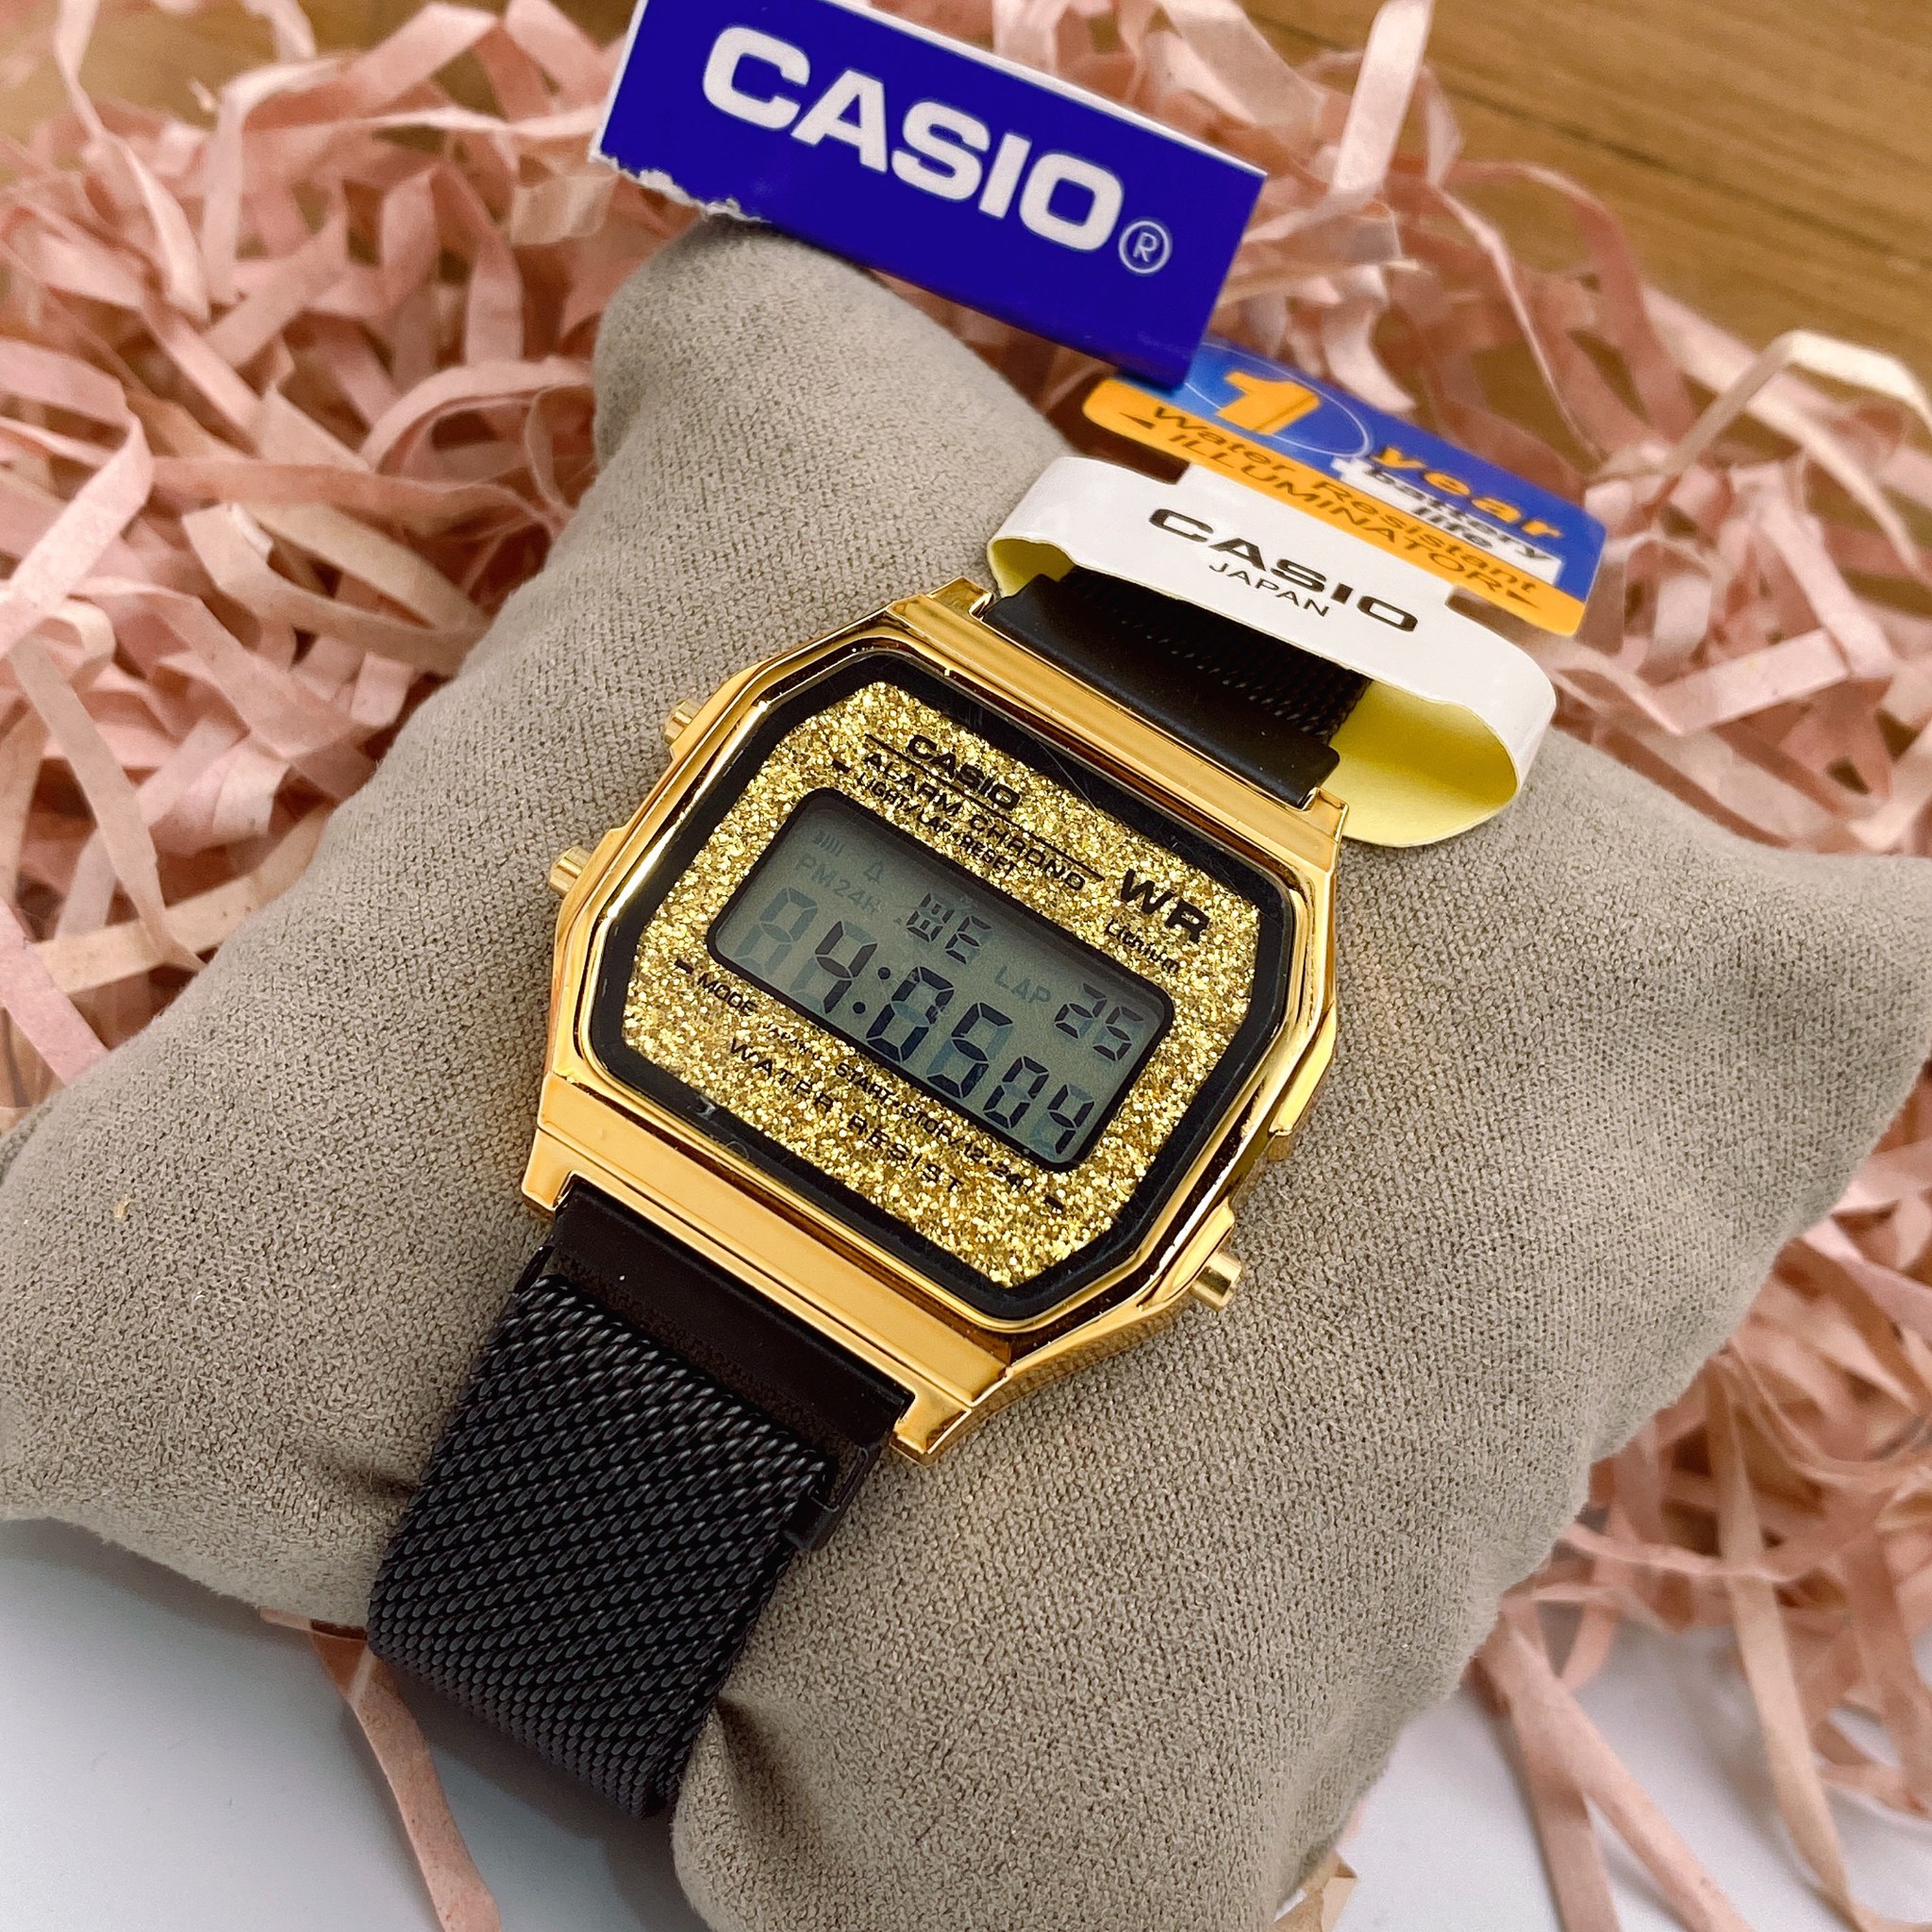 นาฬิกา Casio Digital รุ่น F1 หน้าเพชร สายแม่เหล็กใส่ได้ทุกวัย แถมฟรีผ้าเช็ด+เซ็ตเวลา